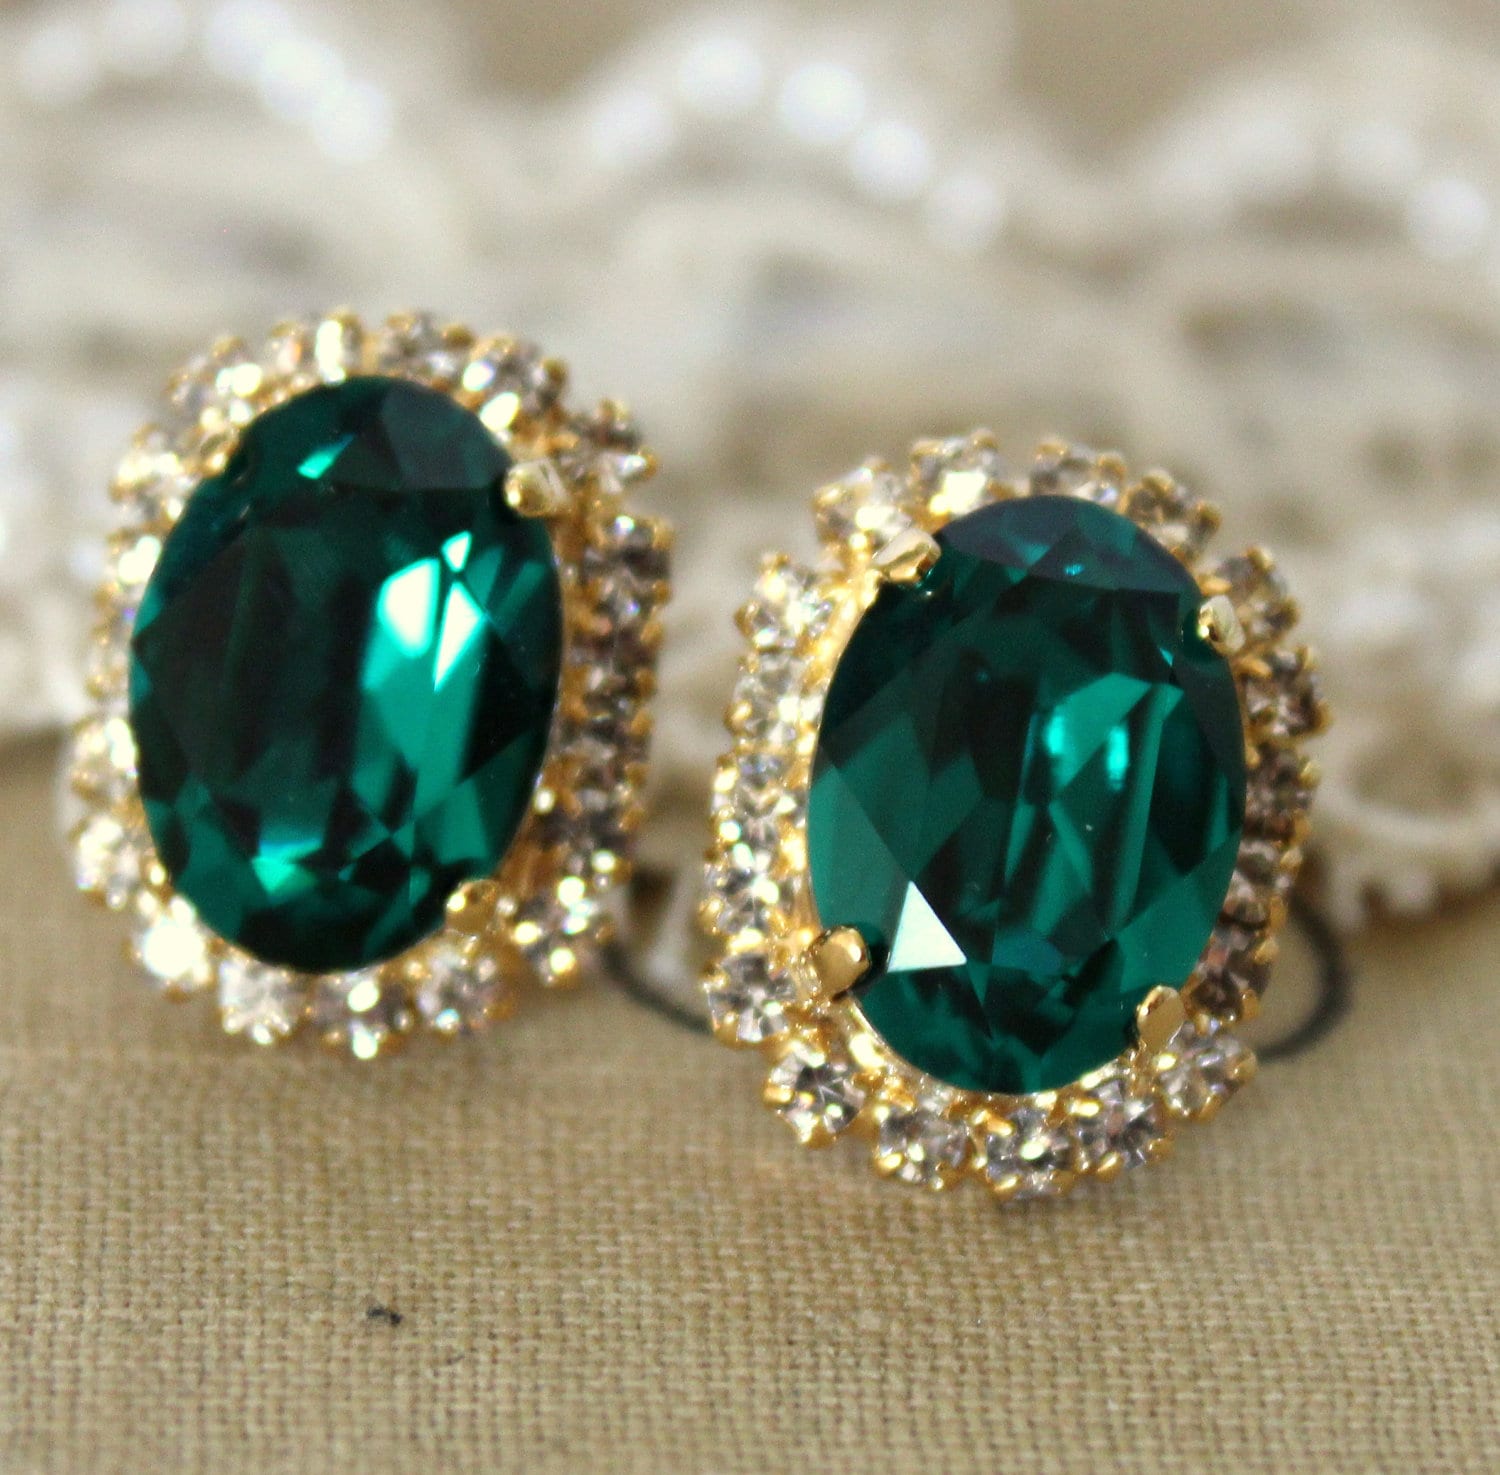 Emerald stud earrings Oval Emerald Swarovski earrings by iloniti